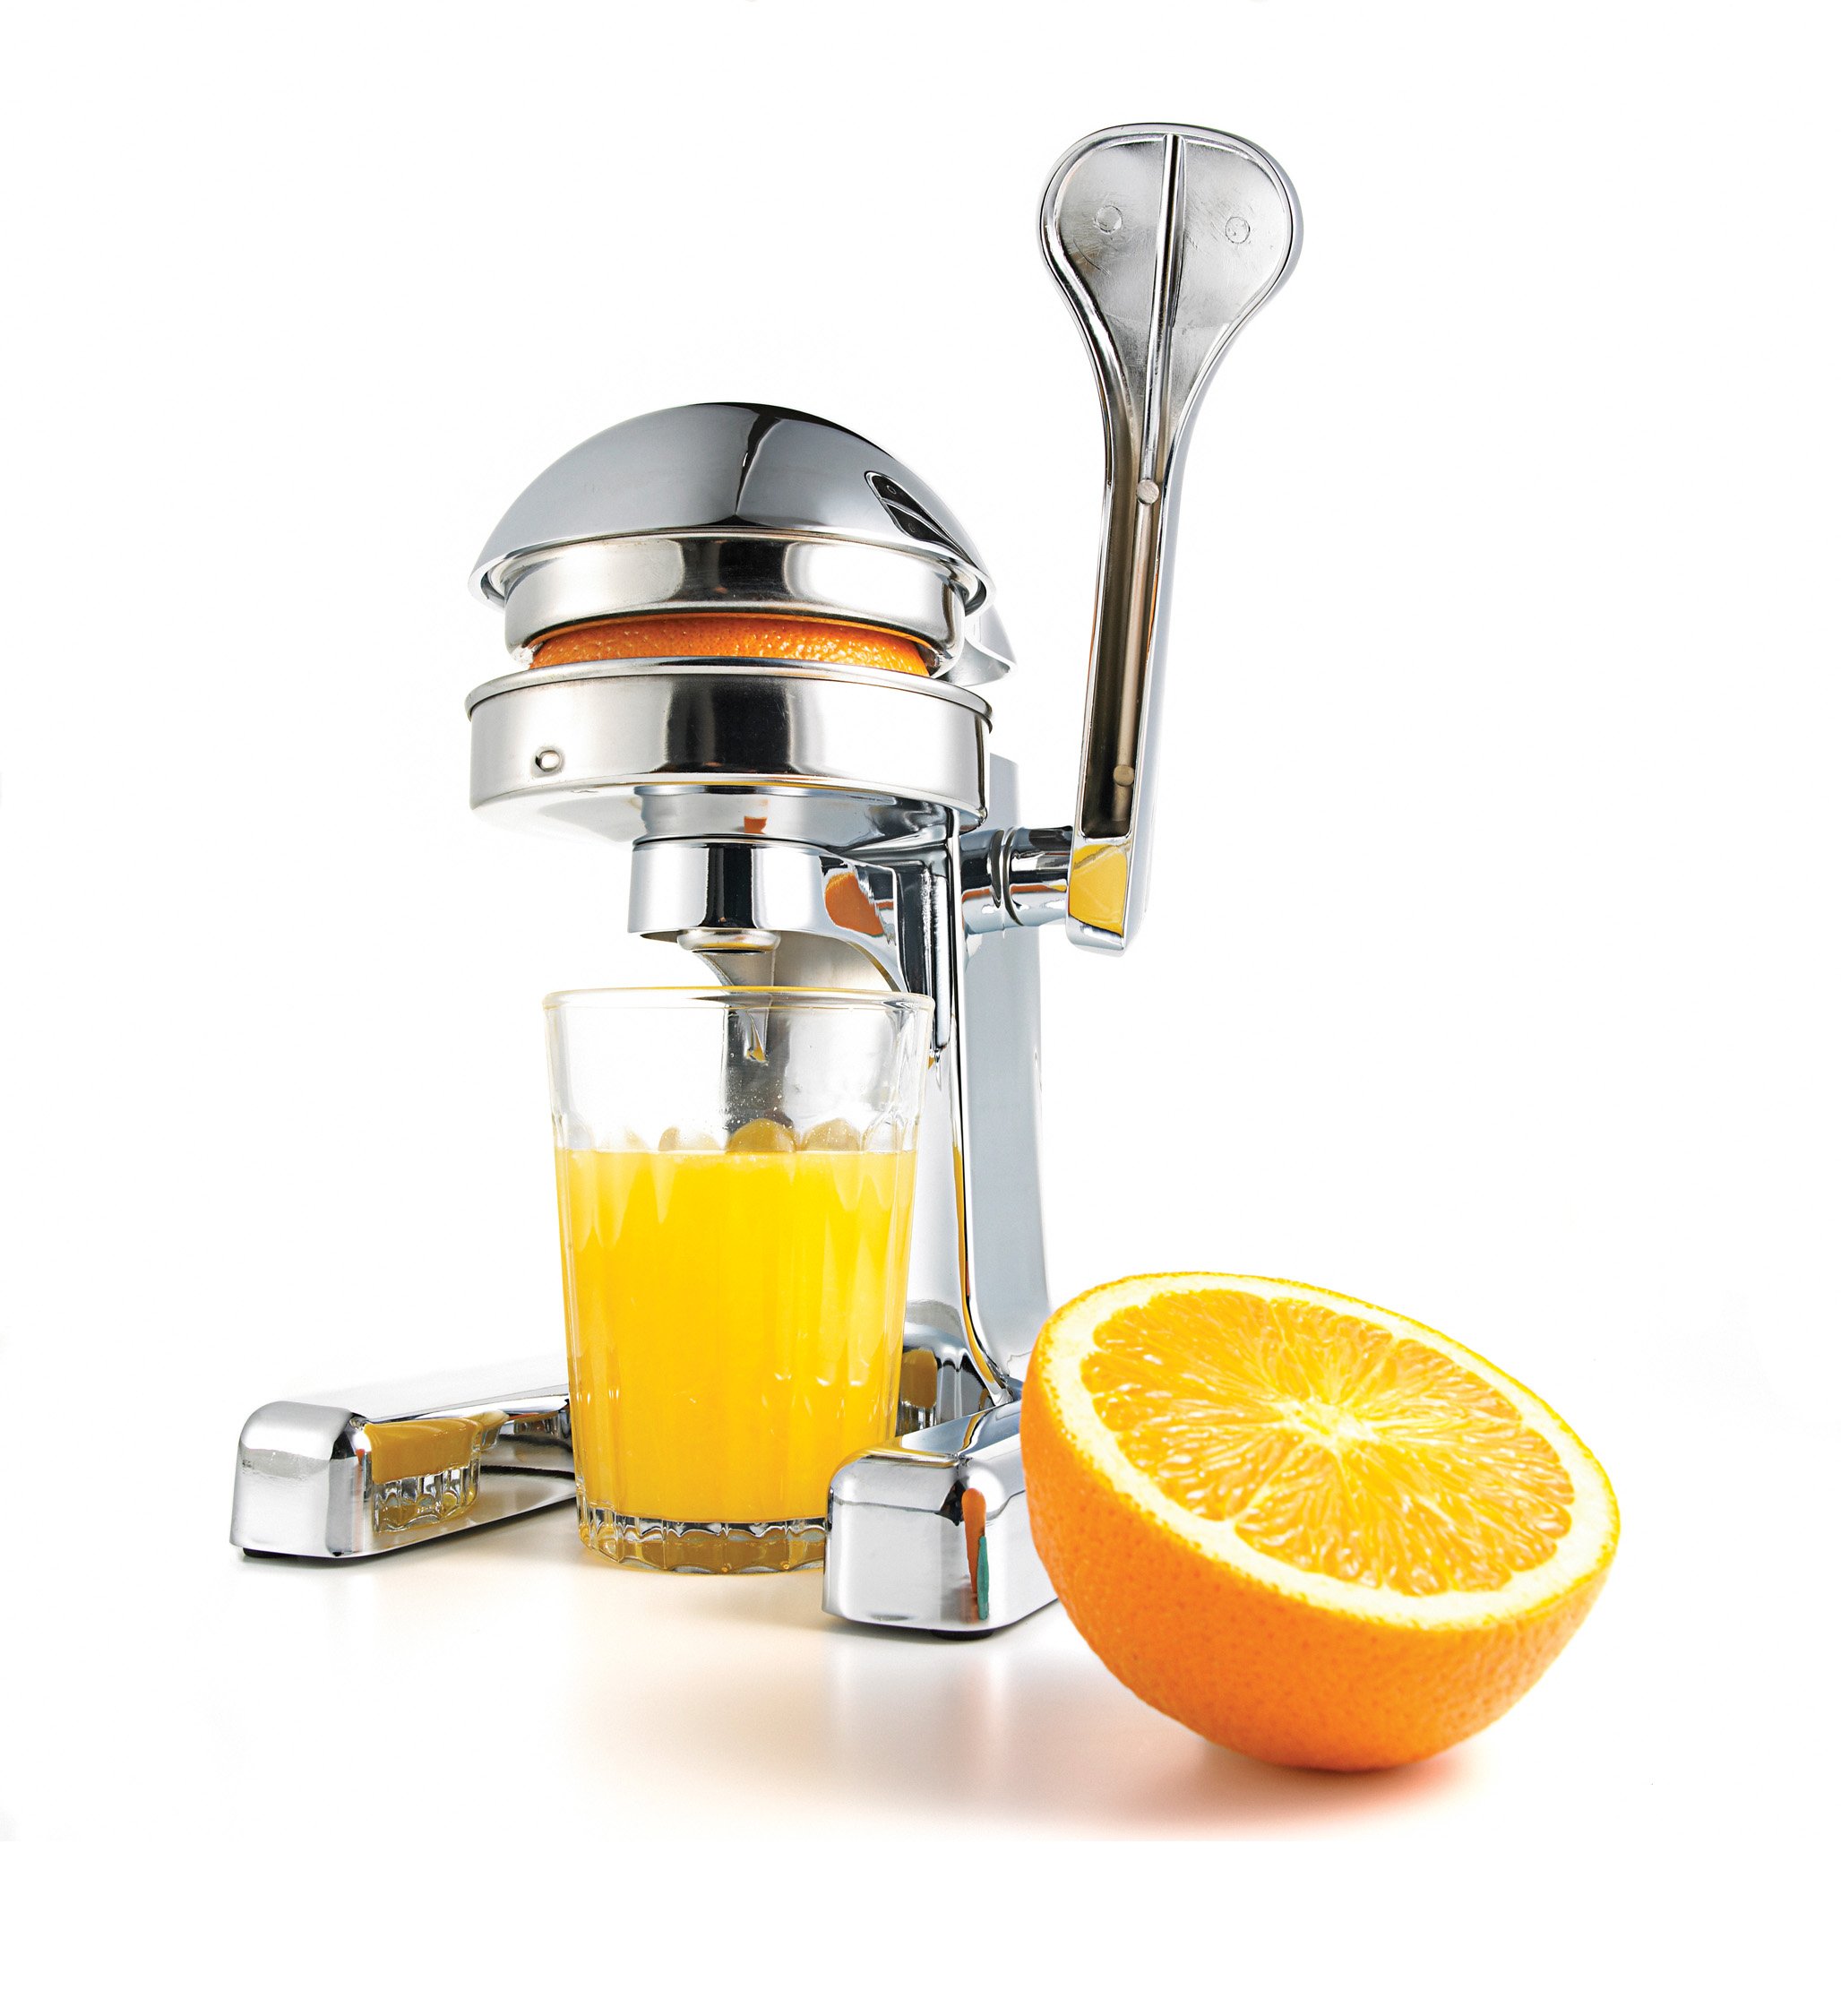 Orange juice, juicer, Jan 13, p106